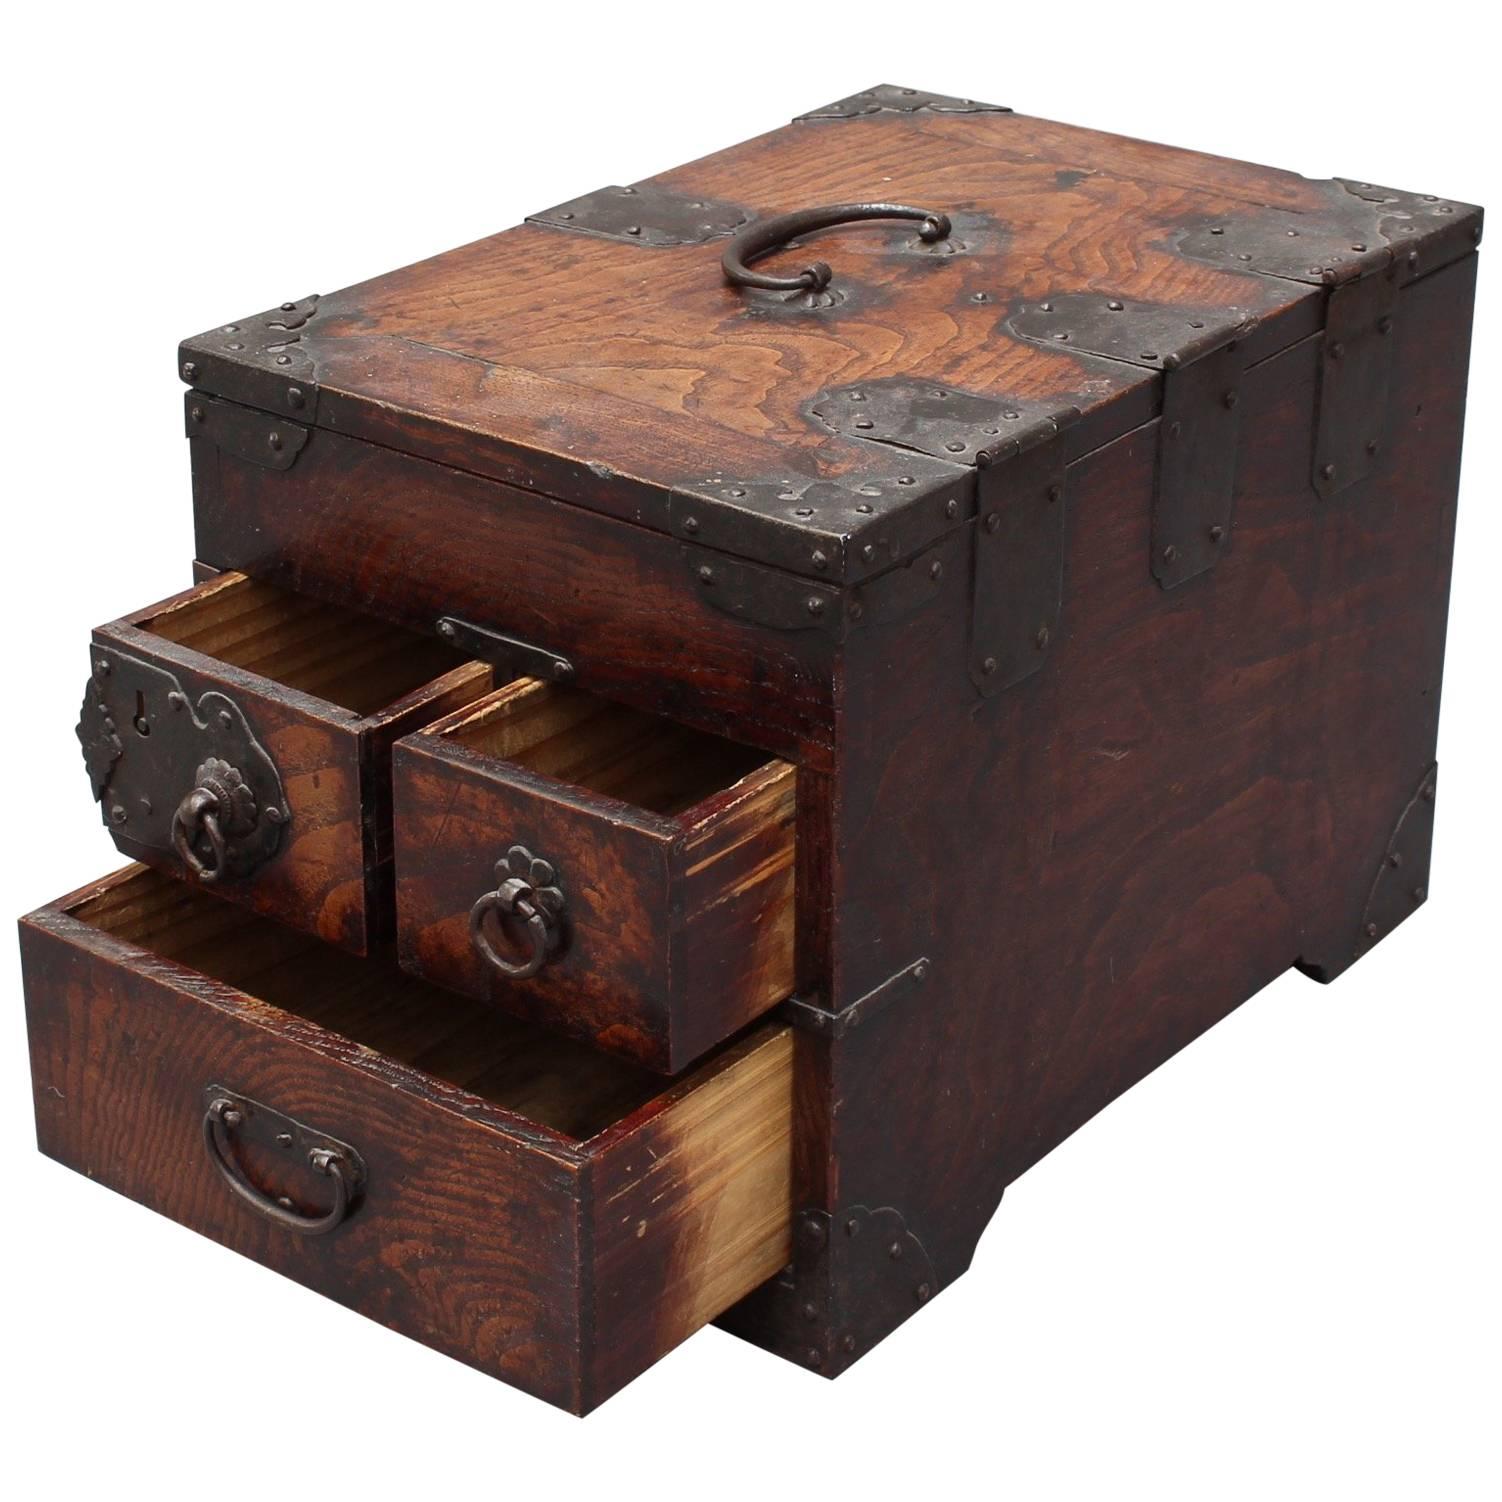 Antique Japanese Wooden Writing Box with Decorative Hardware 'Meiji Era'